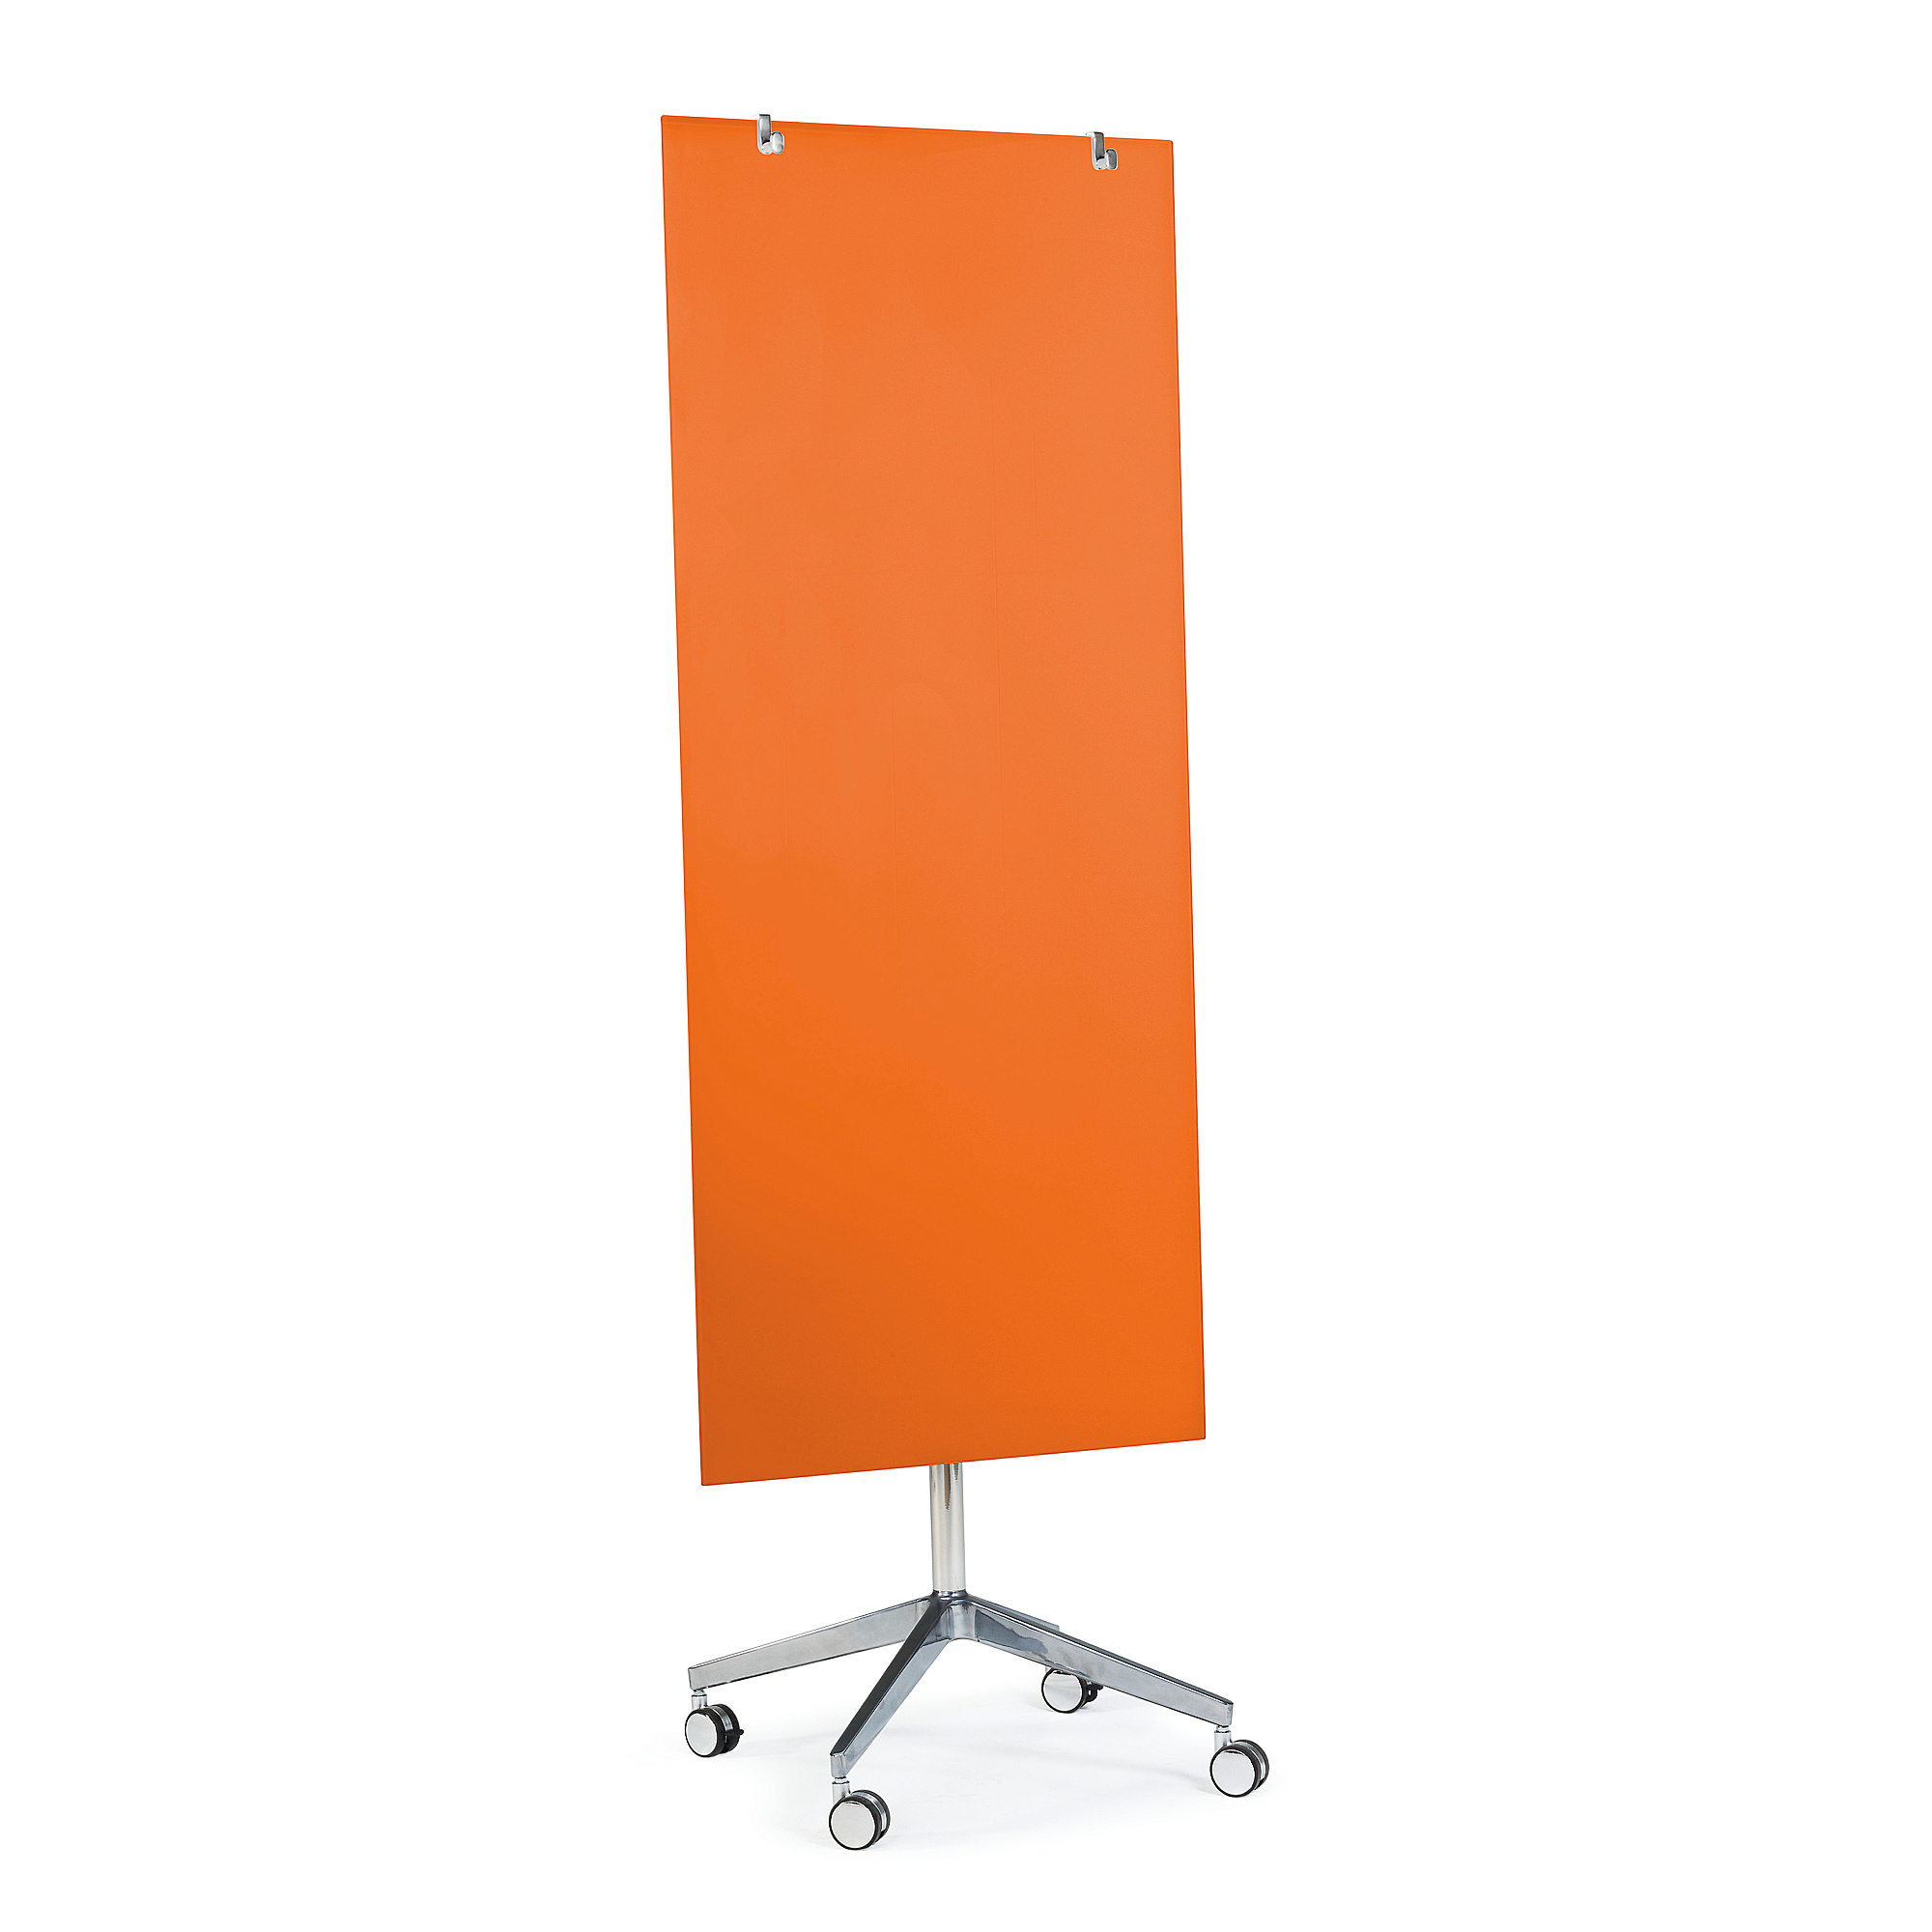 Mobilní skleněná tabule STELLA, magnetická, pastelově oranžová